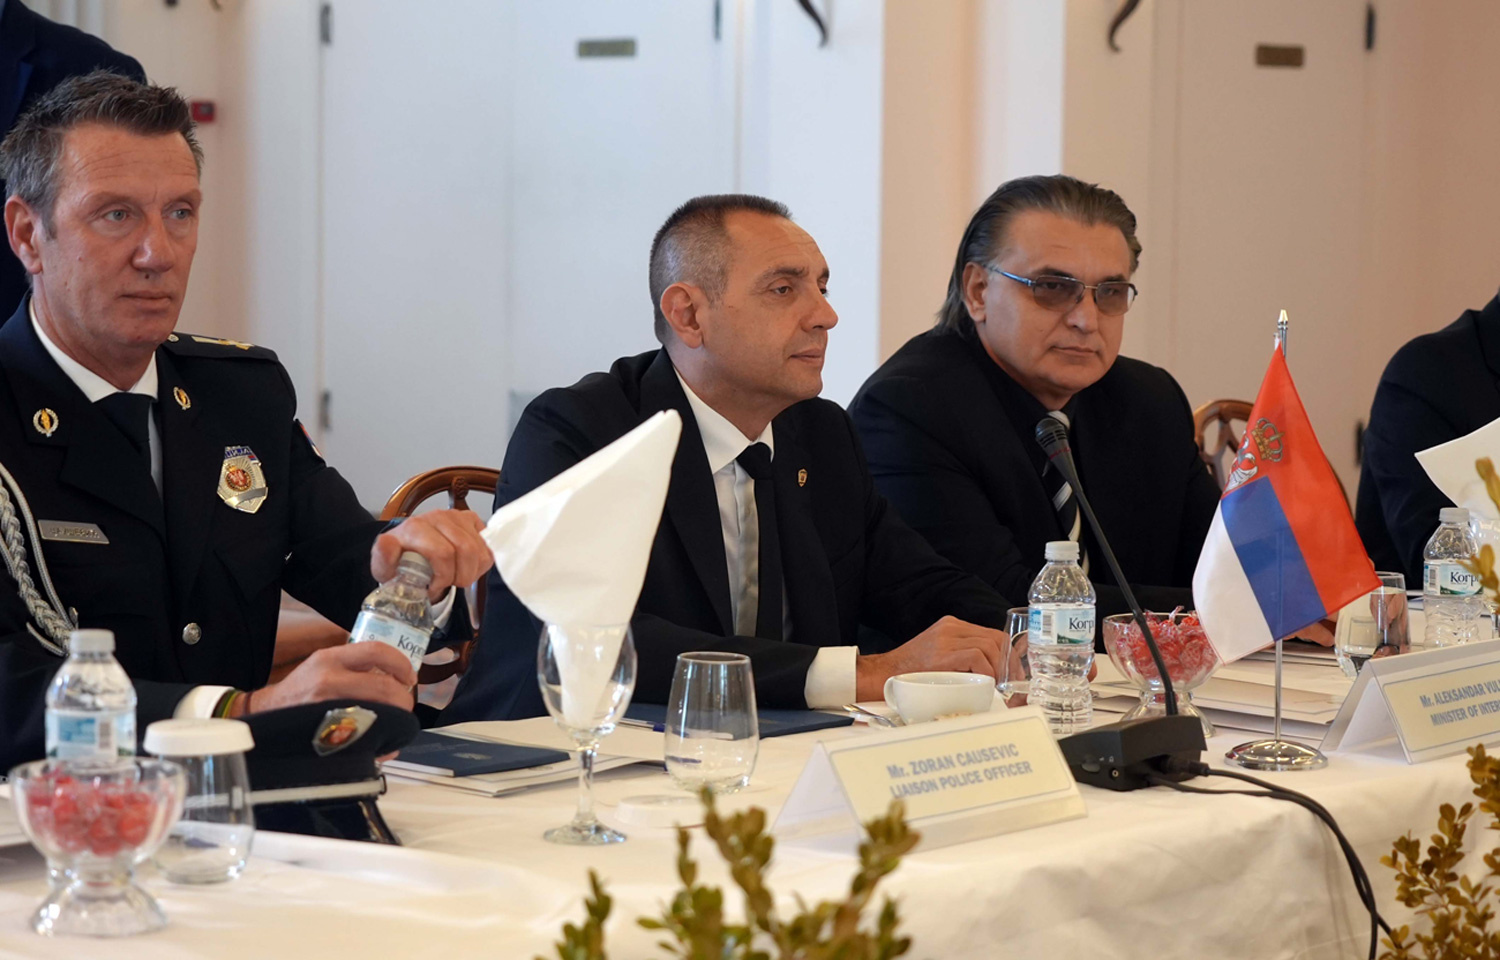 Ministri Vulin i Teodorikakos: Visok nivo saradnje srpske i grčke policije 